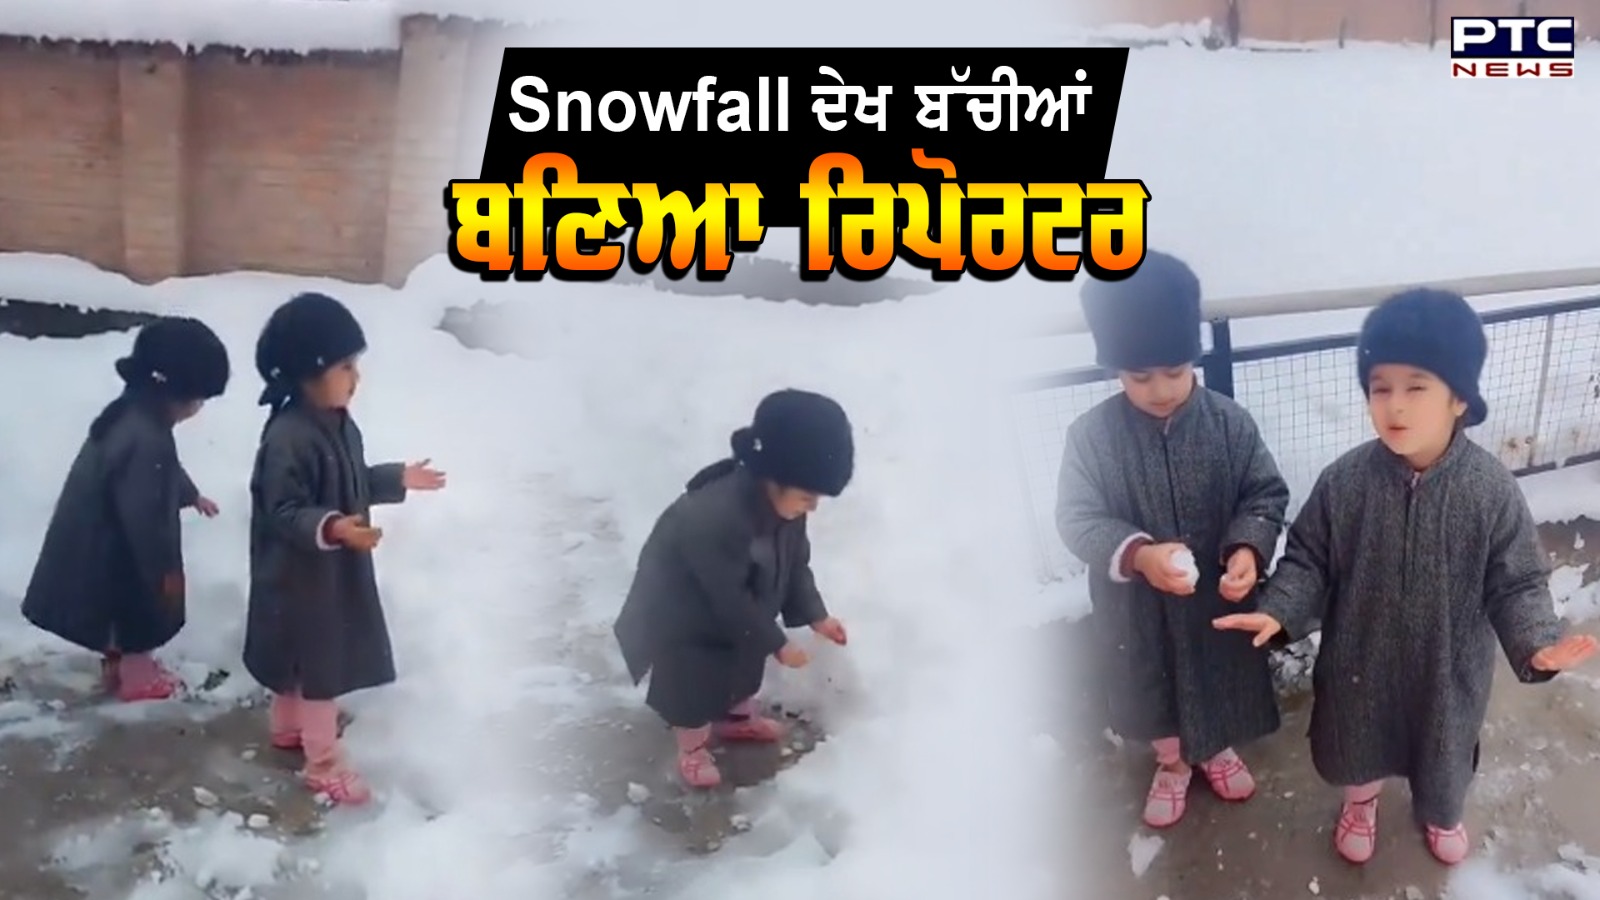 Kashmir 'ਚ Snowfall ਦੇਖ ਬੱਚੀਆਂ ਬਣੀਆਂ ਰਿਪੋਰਟਰ, ਸੁਣੋ Reporting